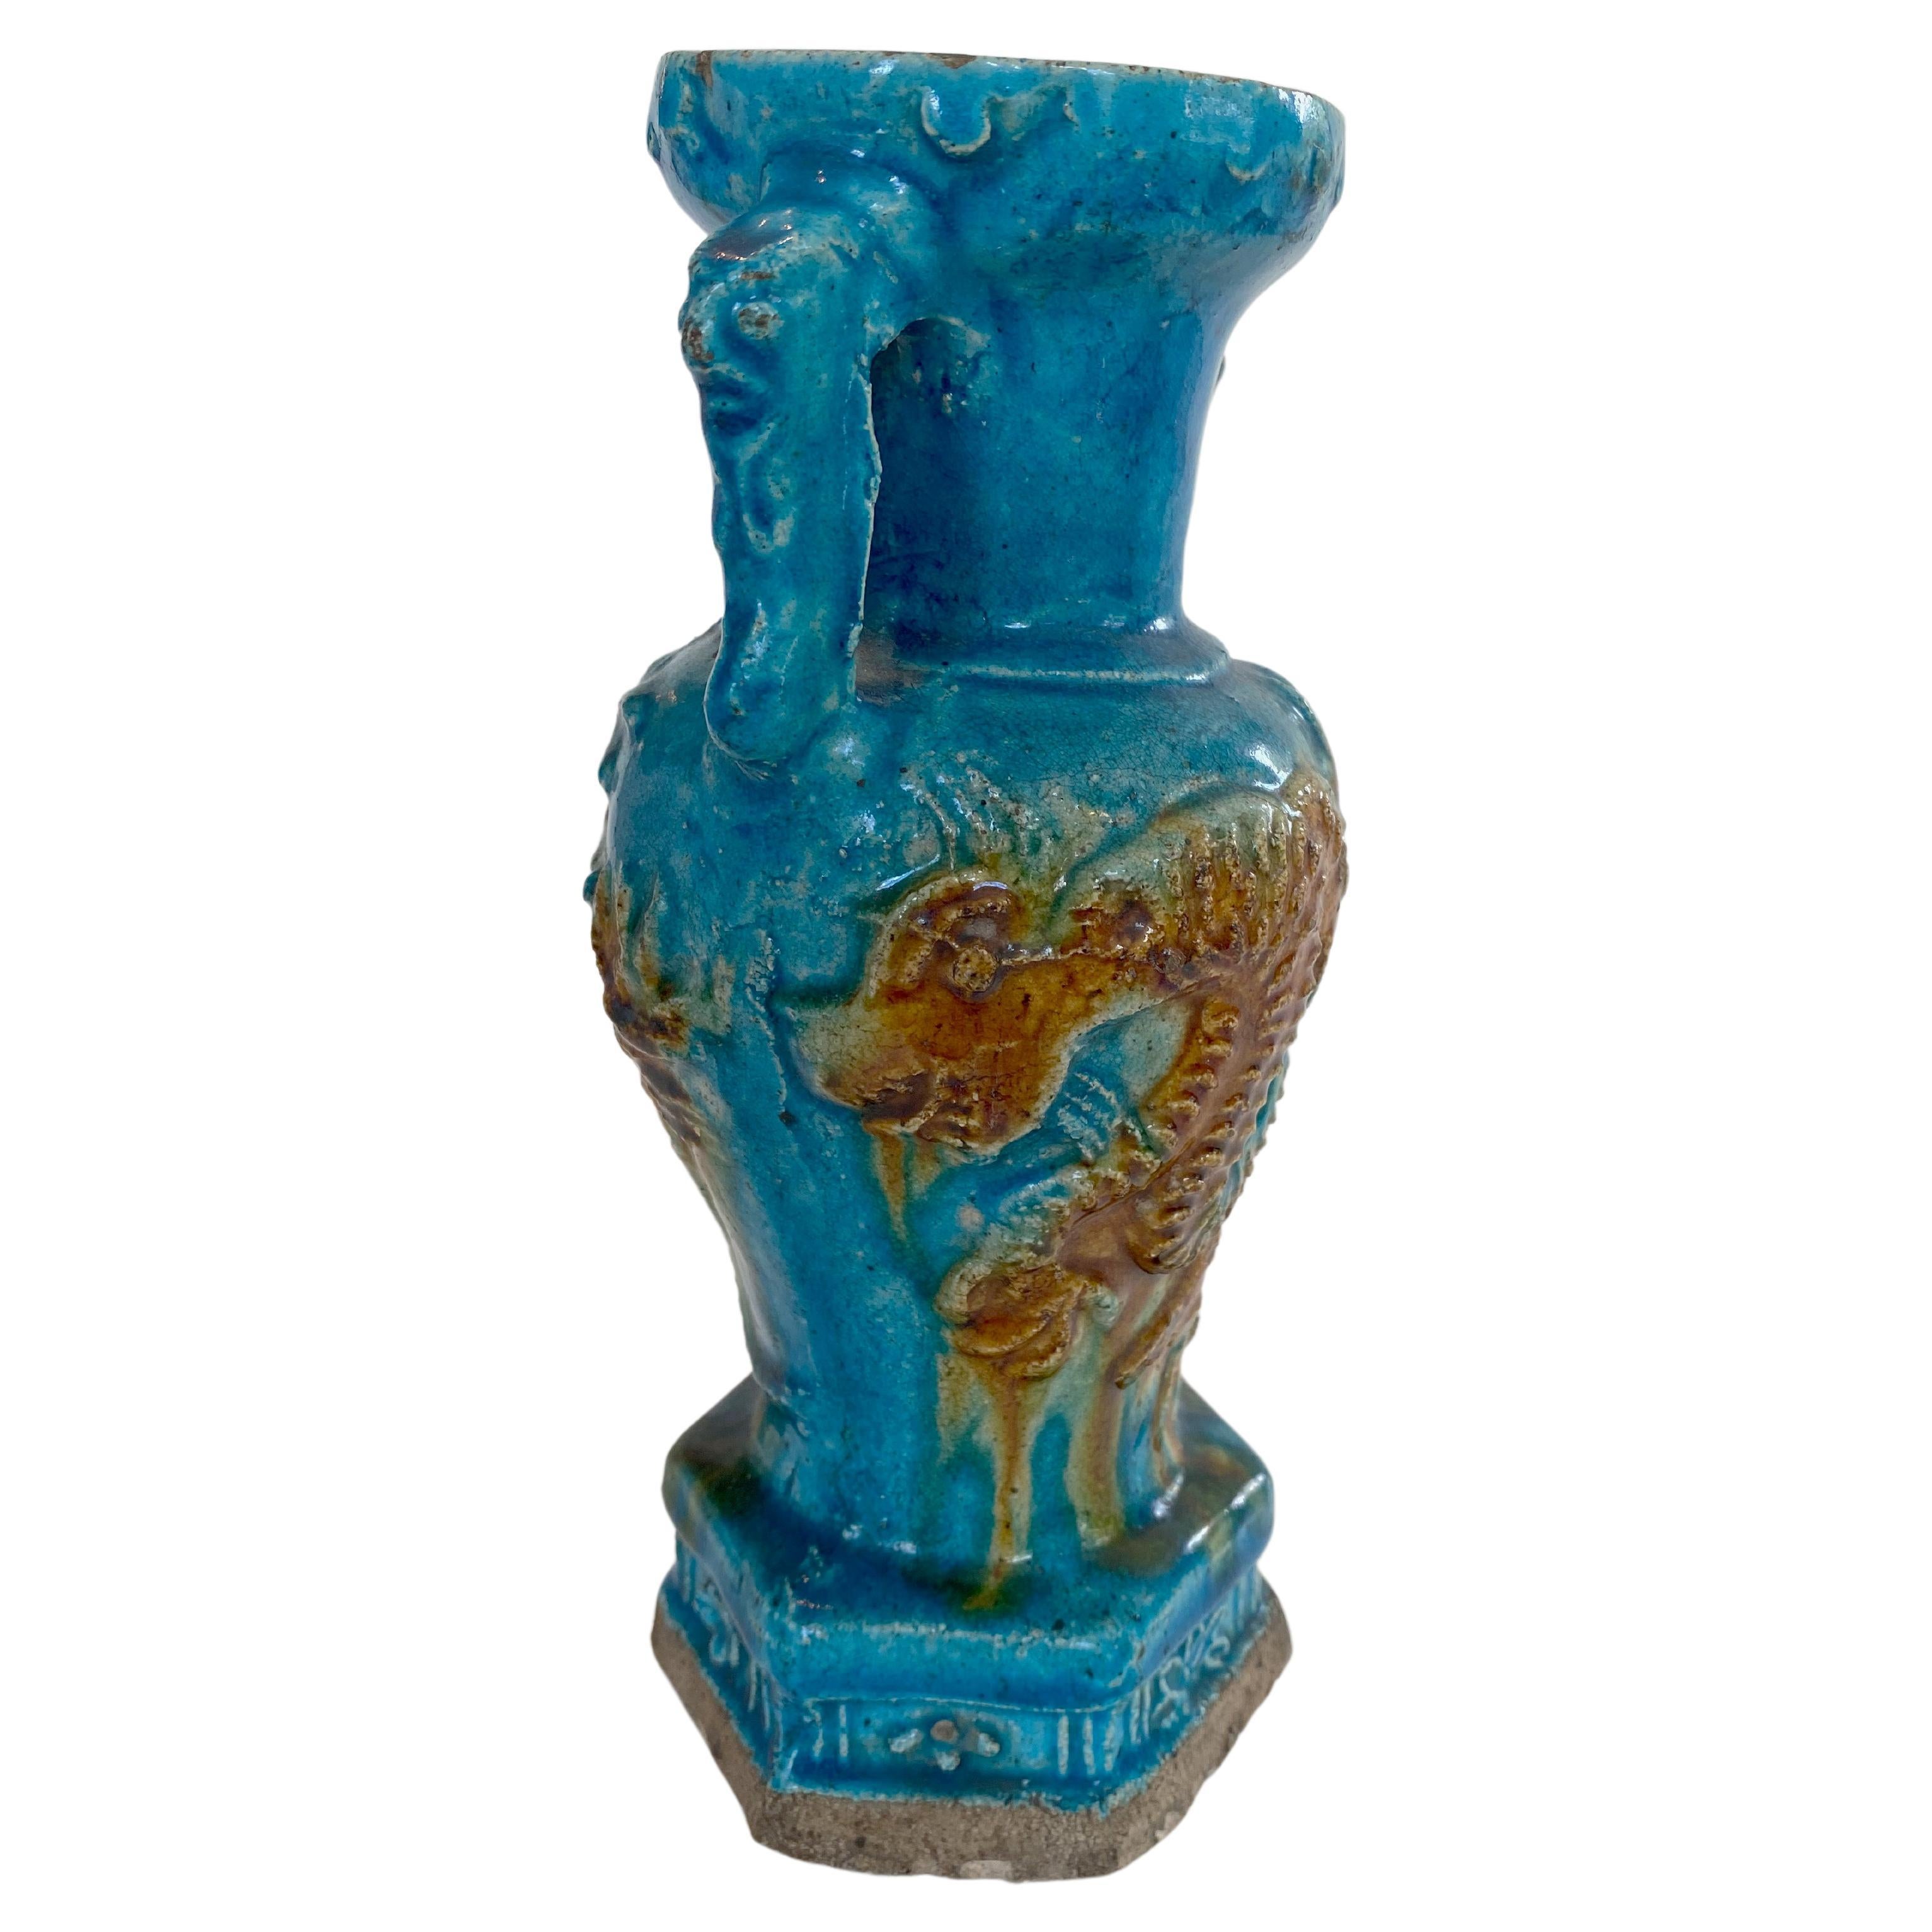 Vase en poterie de la dynastie Ming (XVIe siècle) à glaçure turquoise vive, décoré de dragons. Le vase est partiellement moulé, avec des bosses circulaires autour du bord de la bouche et une base hexagonale décorée de fleurs en relief. Le vase a